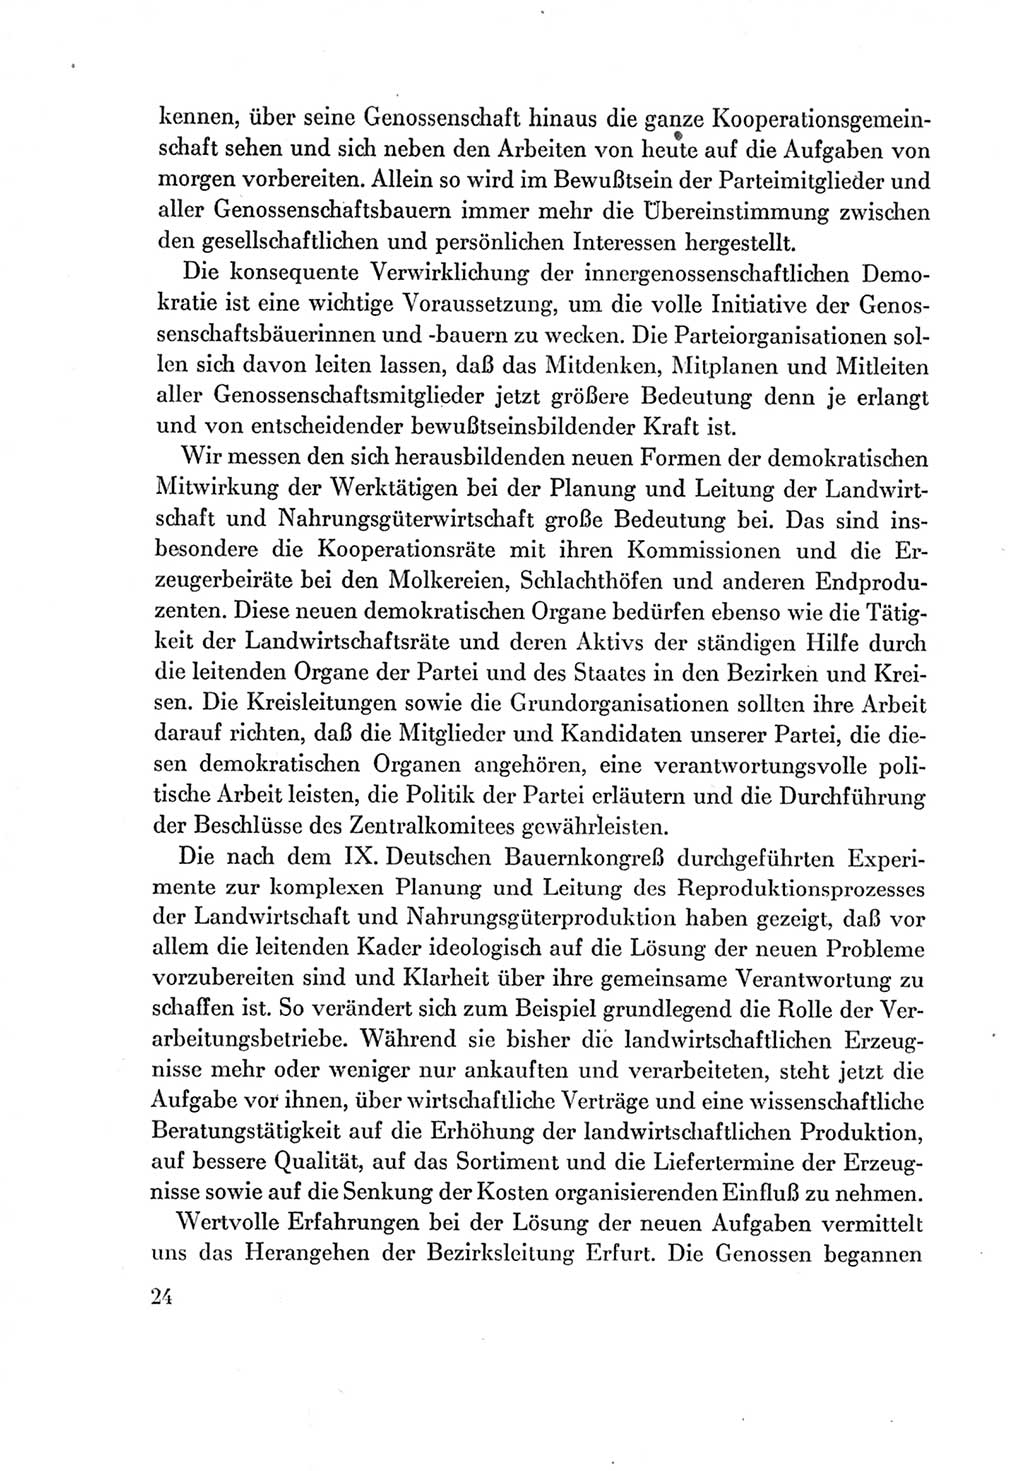 Protokoll der Verhandlungen des Ⅶ. Parteitages der Sozialistischen Einheitspartei Deutschlands (SED) [Deutsche Demokratische Republik (DDR)] 1967, Band Ⅱ, Seite 24 (Prot. Verh. Ⅶ. PT SED DDR 1967, Bd. Ⅱ, S. 24)